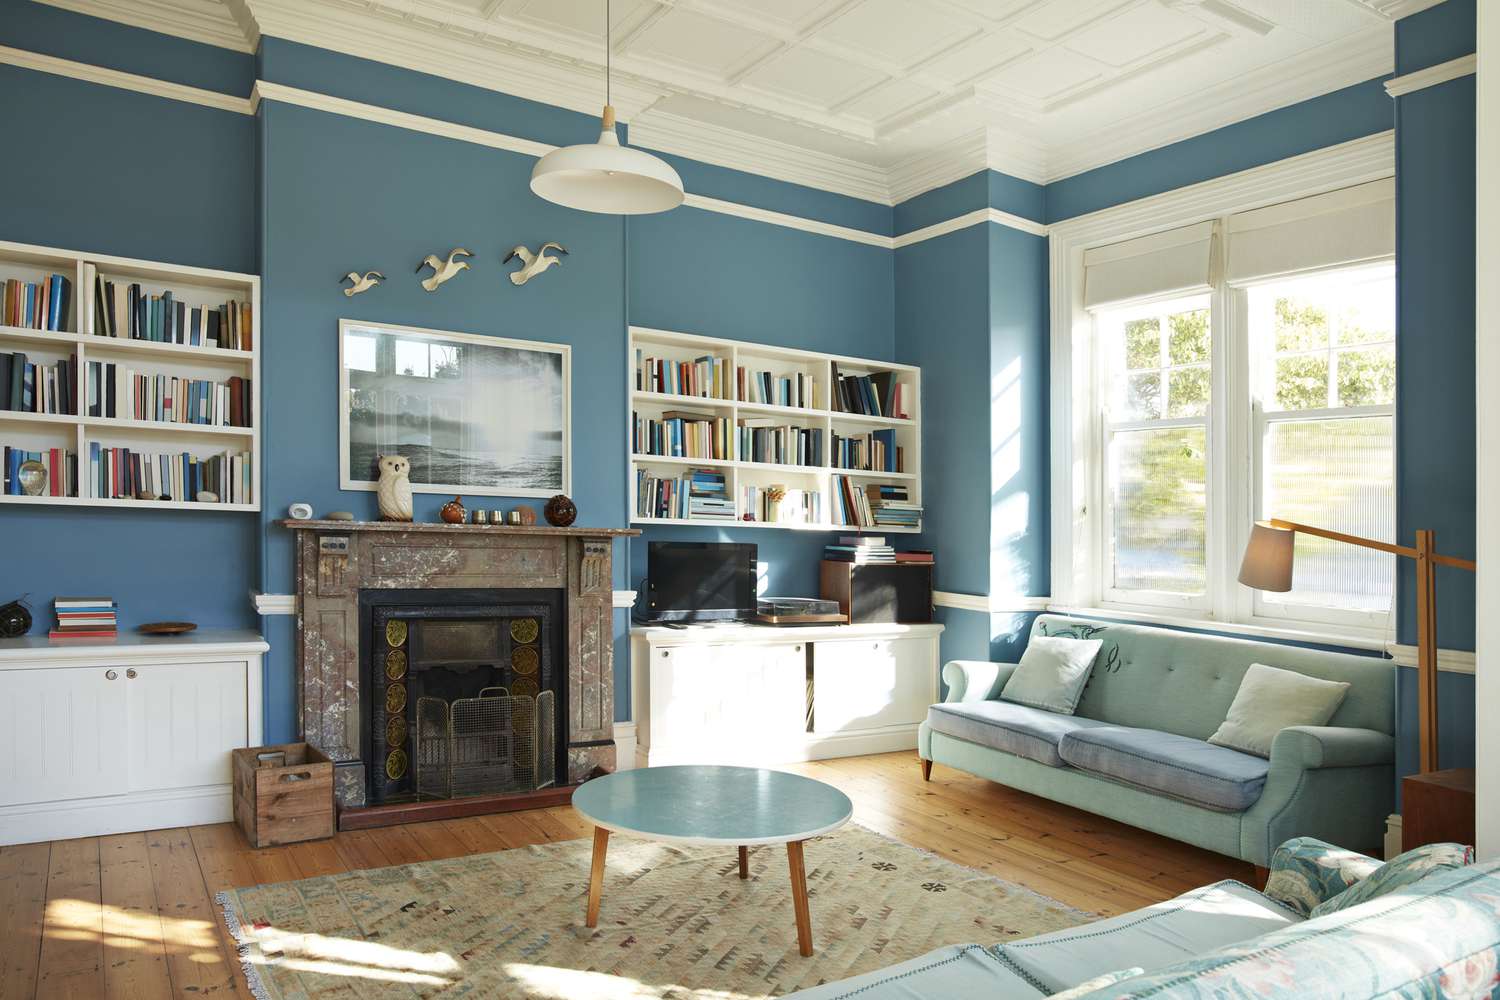 Sala de estar decorada com paredes azul-petróleo e estantes de livros